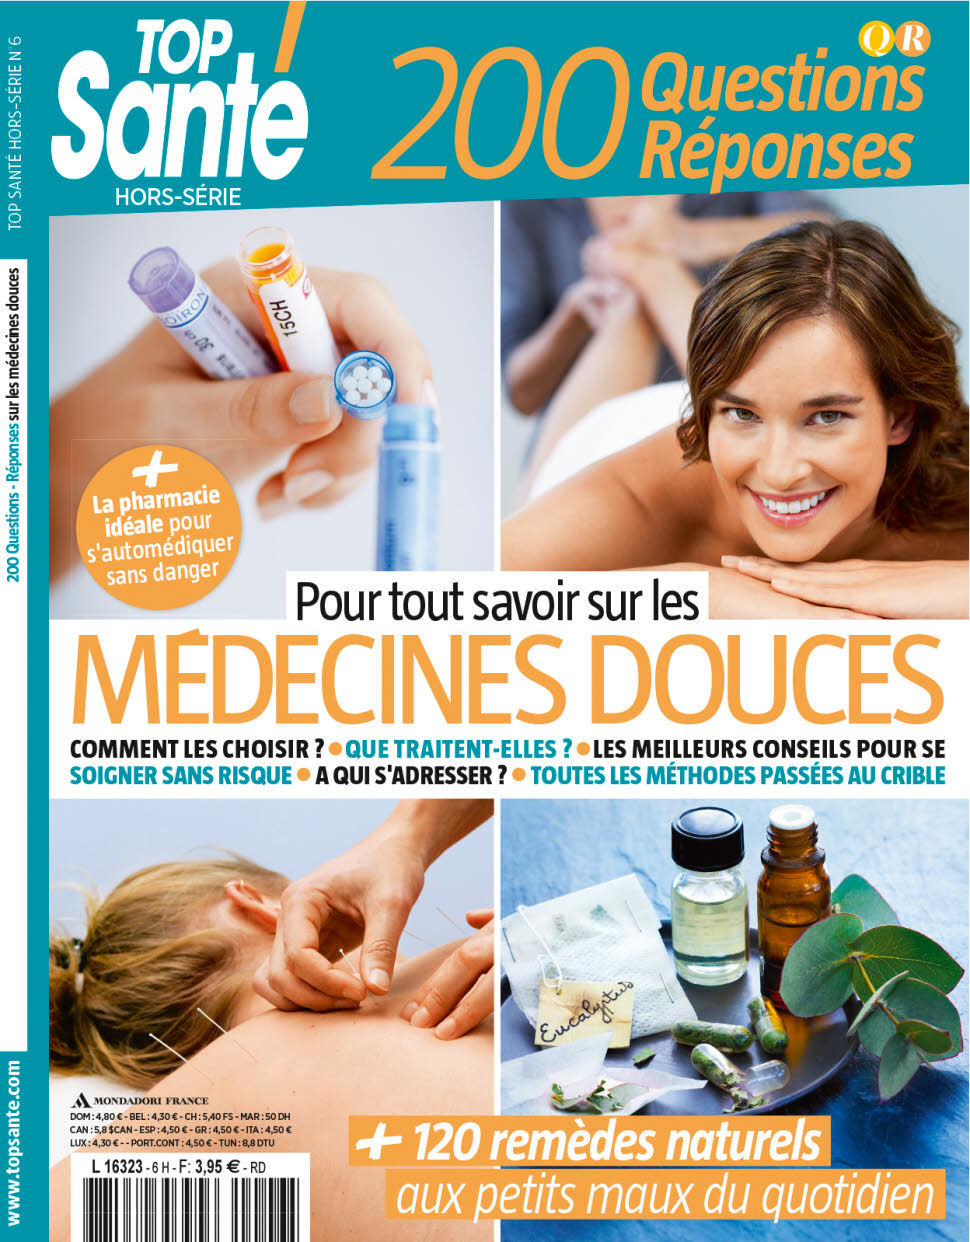 Top Santé Hors-Série N°6 - Medecines Douces